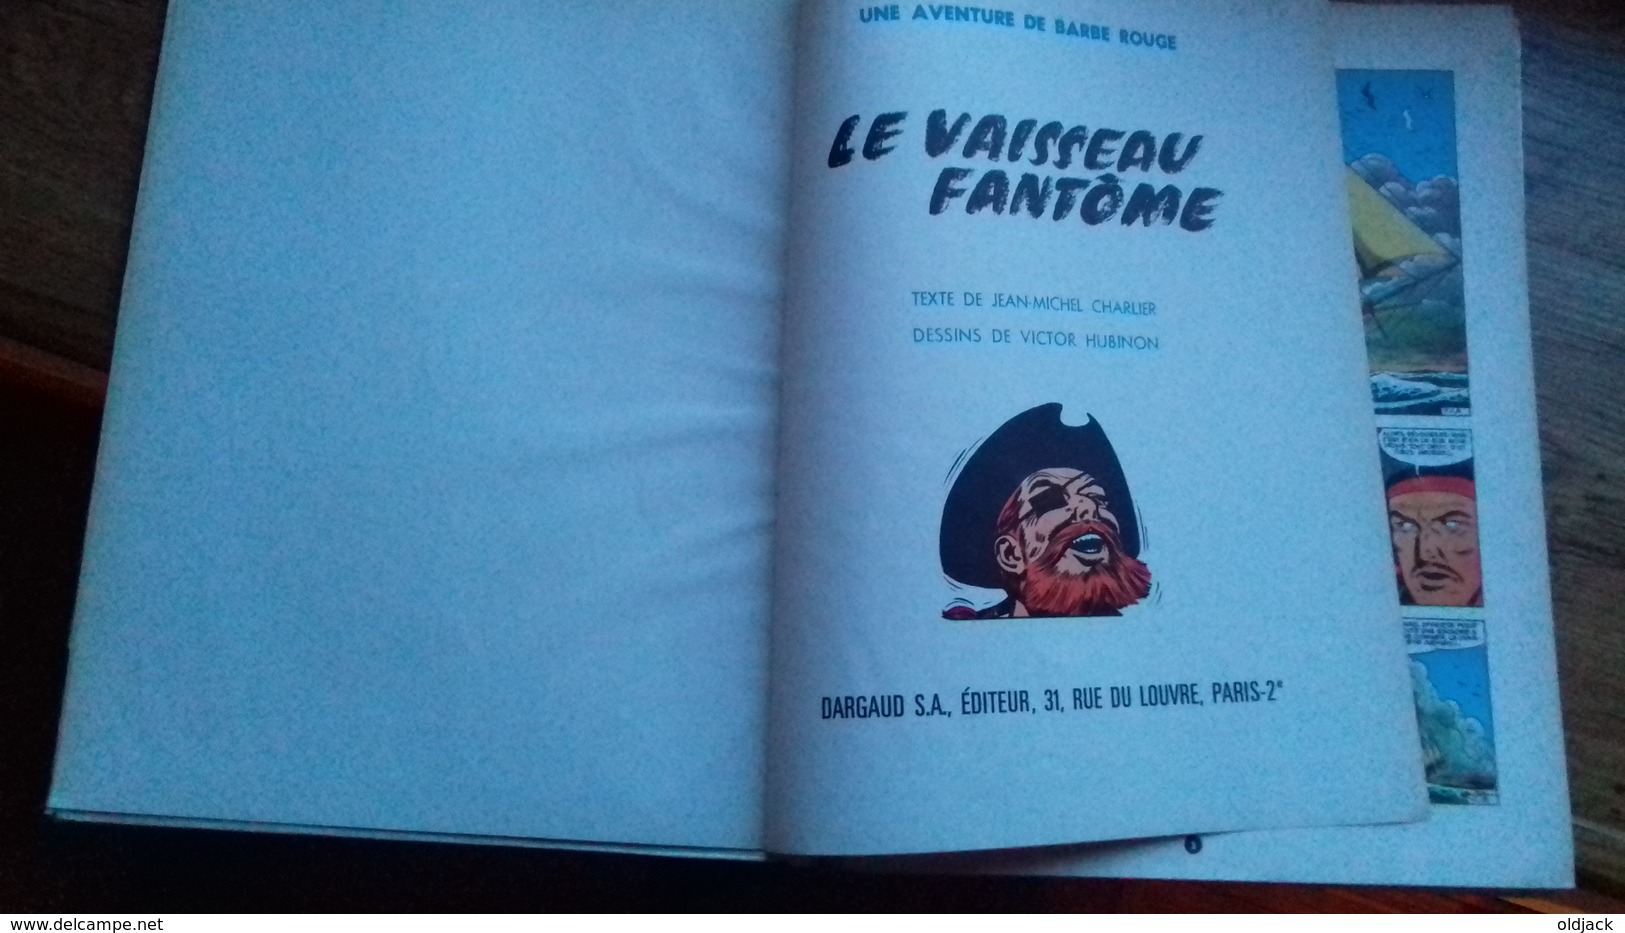 BARBE-ROUGE "LE VAISSEAU FANTÔME"le Démon Des Caraïbes.1966.(col8a)) - Barbe-Rouge